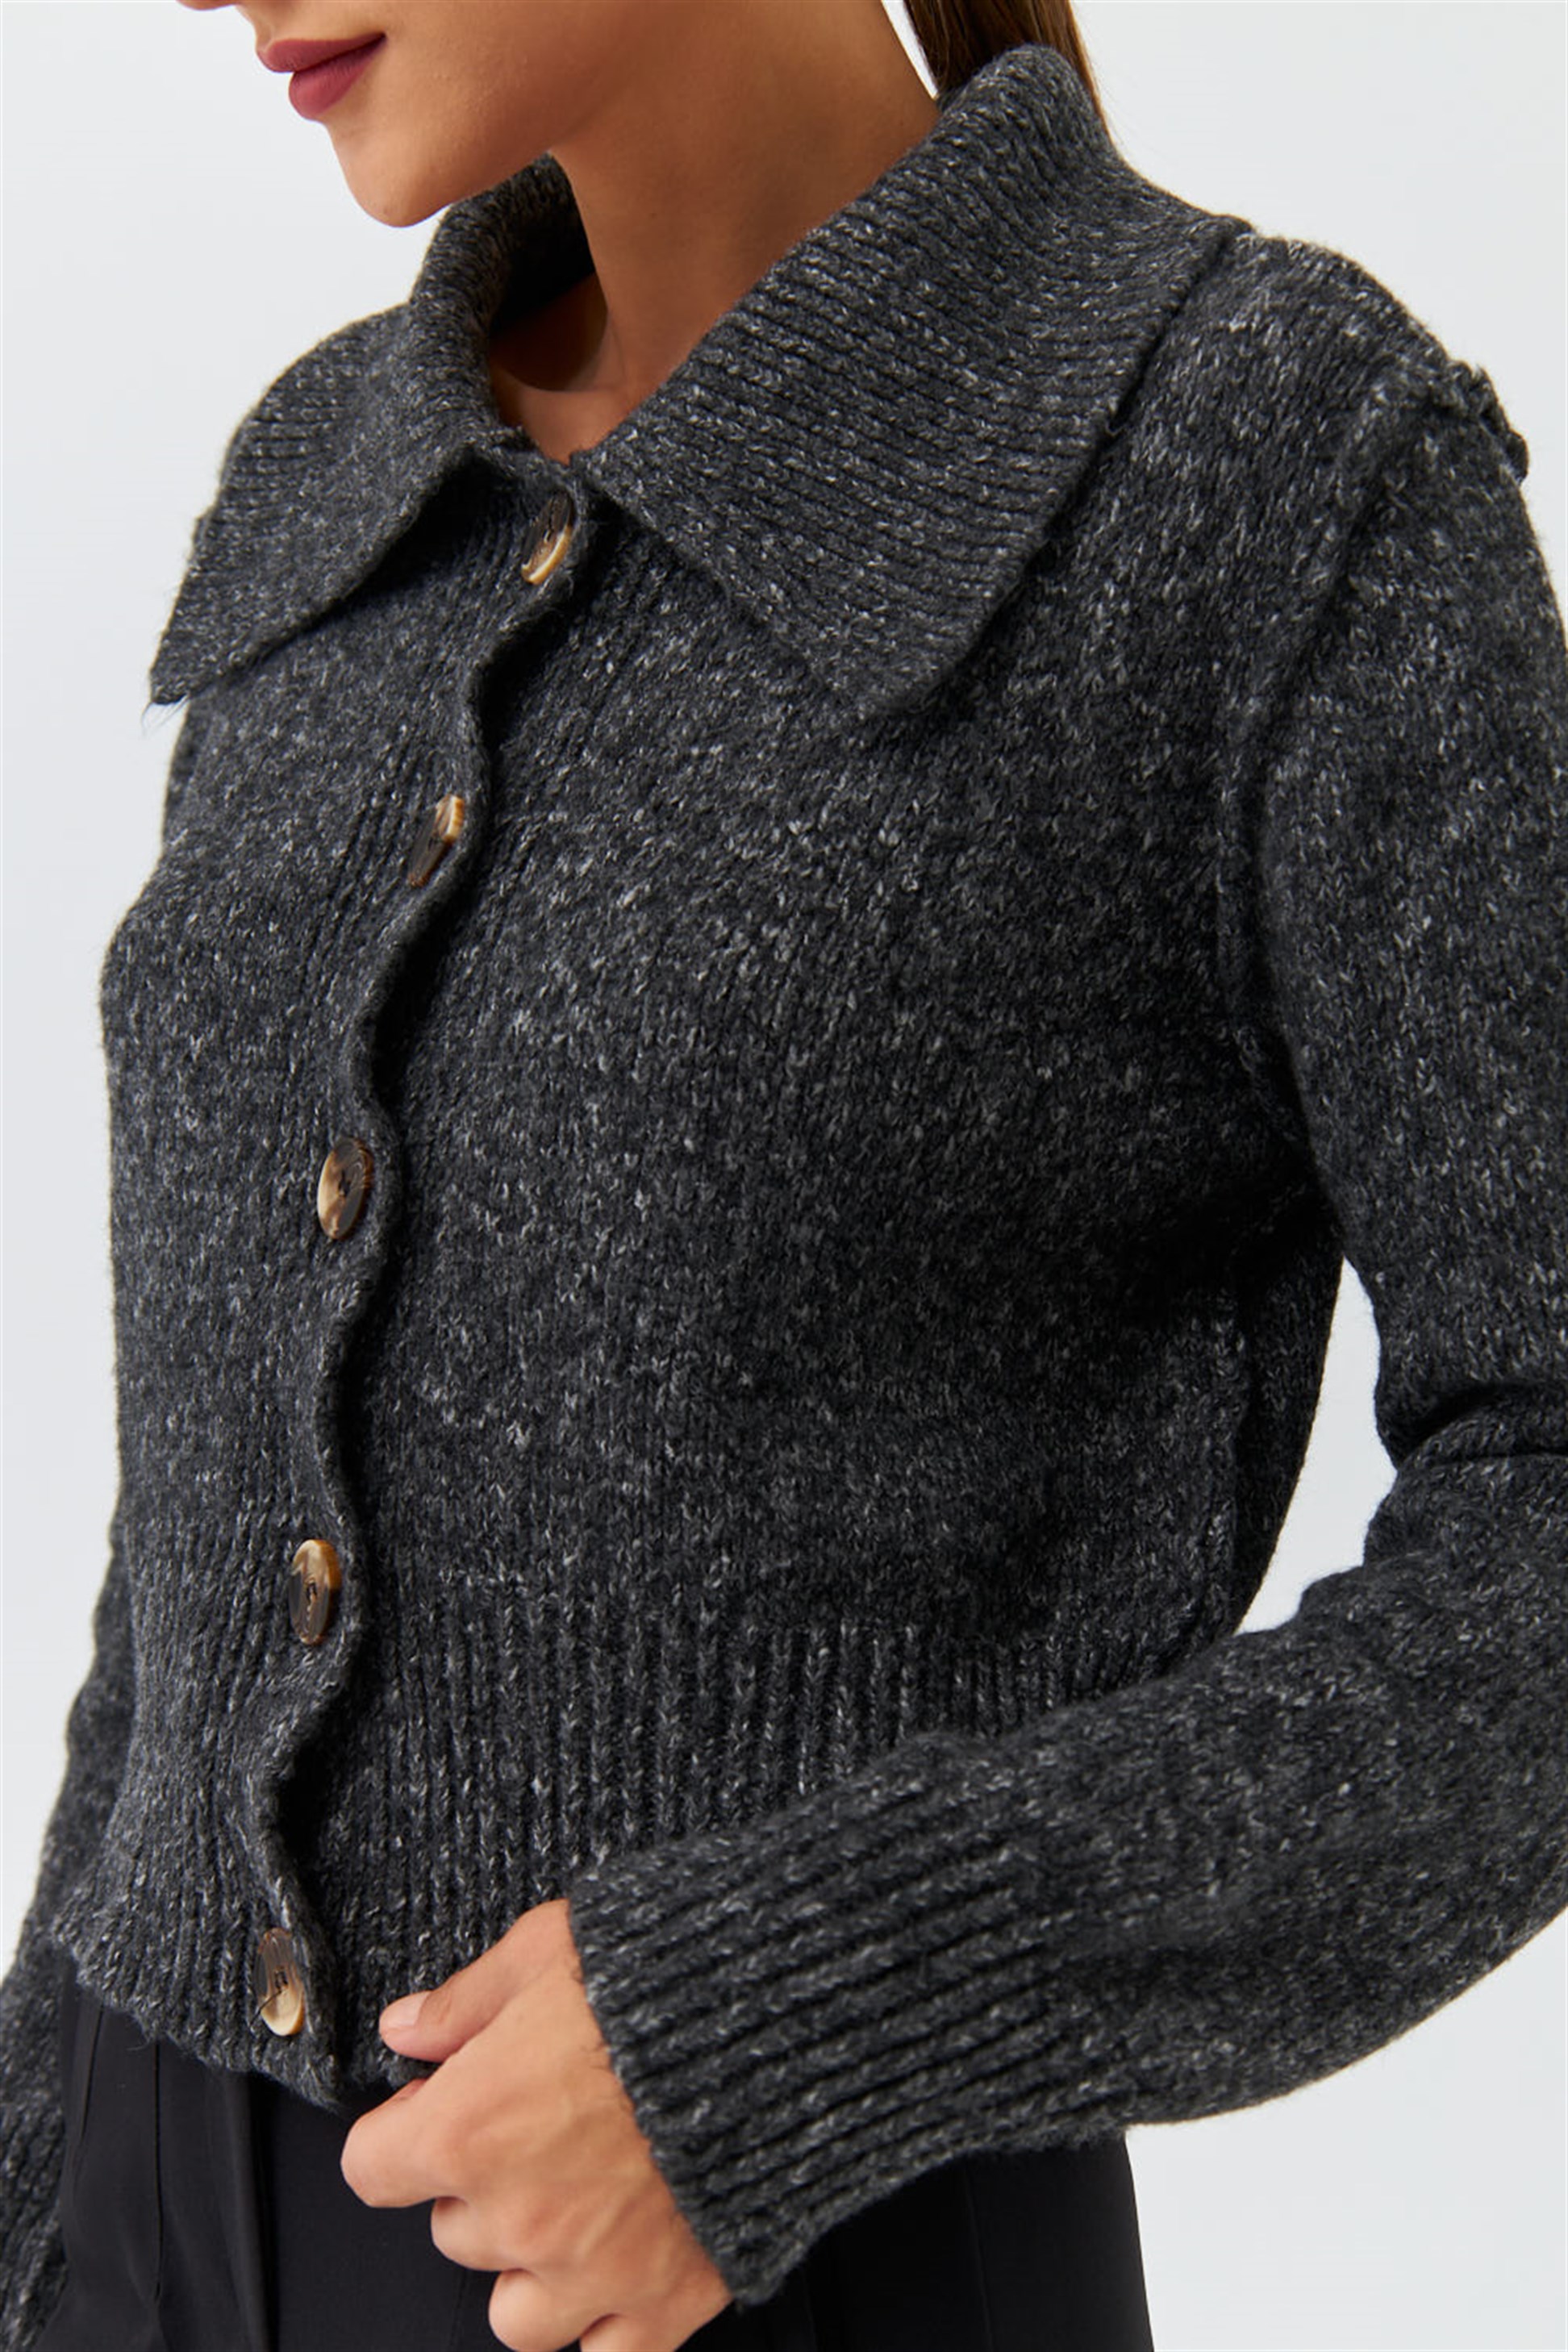 Rabatt 63 % DAMEN Pullovers & Sweatshirts Pullover Metallic Kiabi Pullover Grau L 